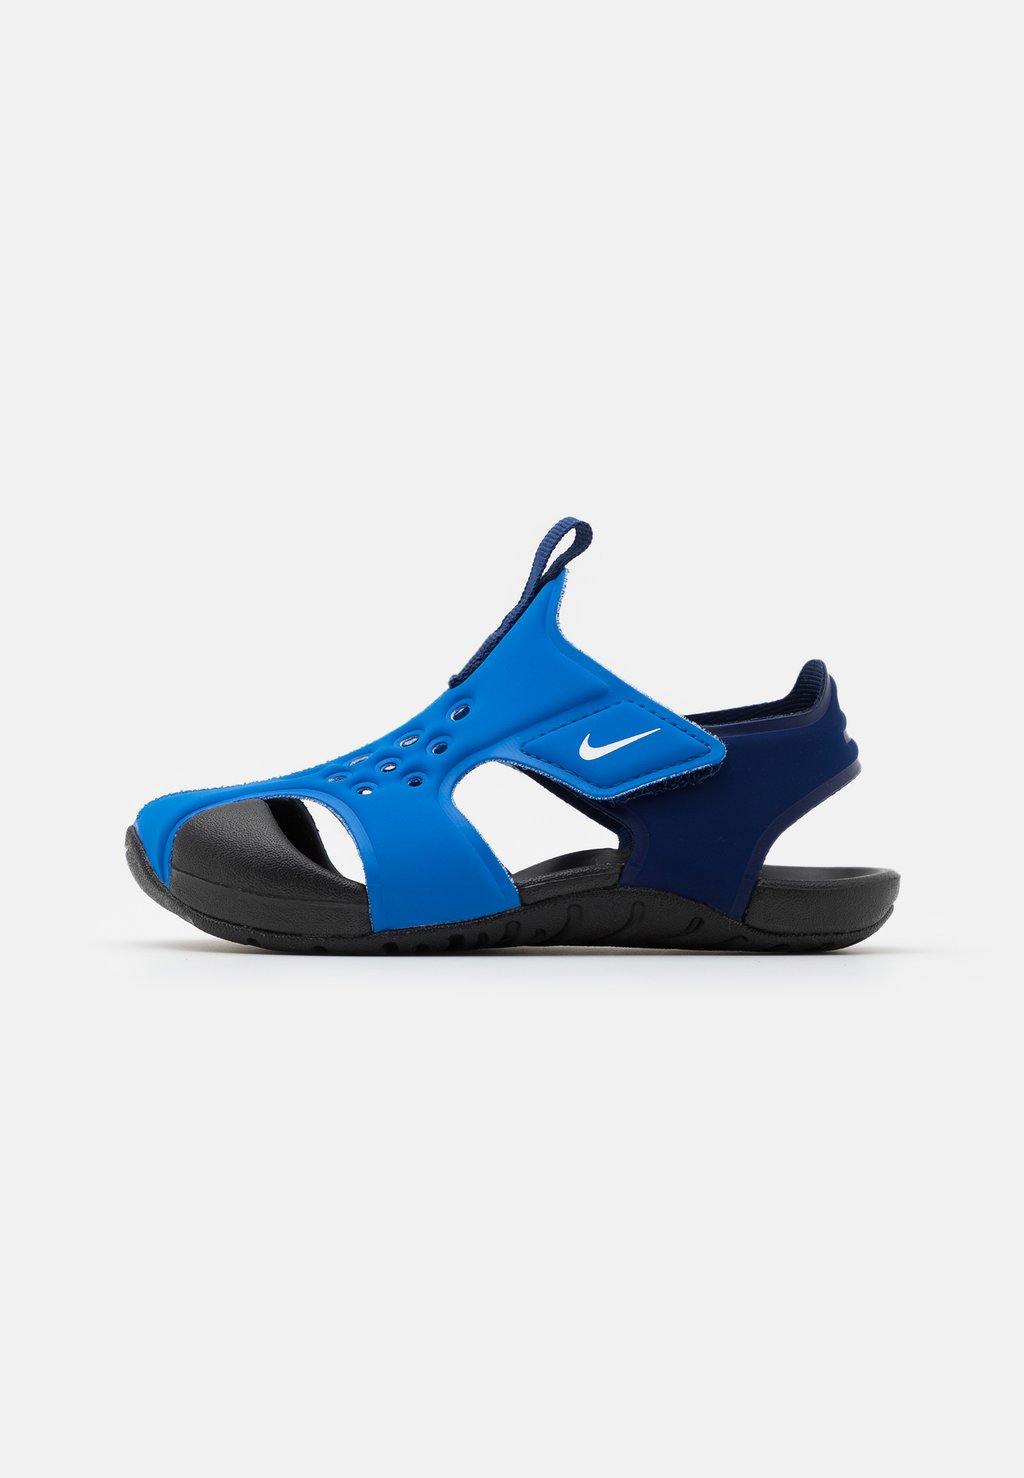 Обувь для водного спорта SUNRAY PROTECT 2 Nike, цвет signal blue/white/blue void/black slade sladest blue black white vinyl